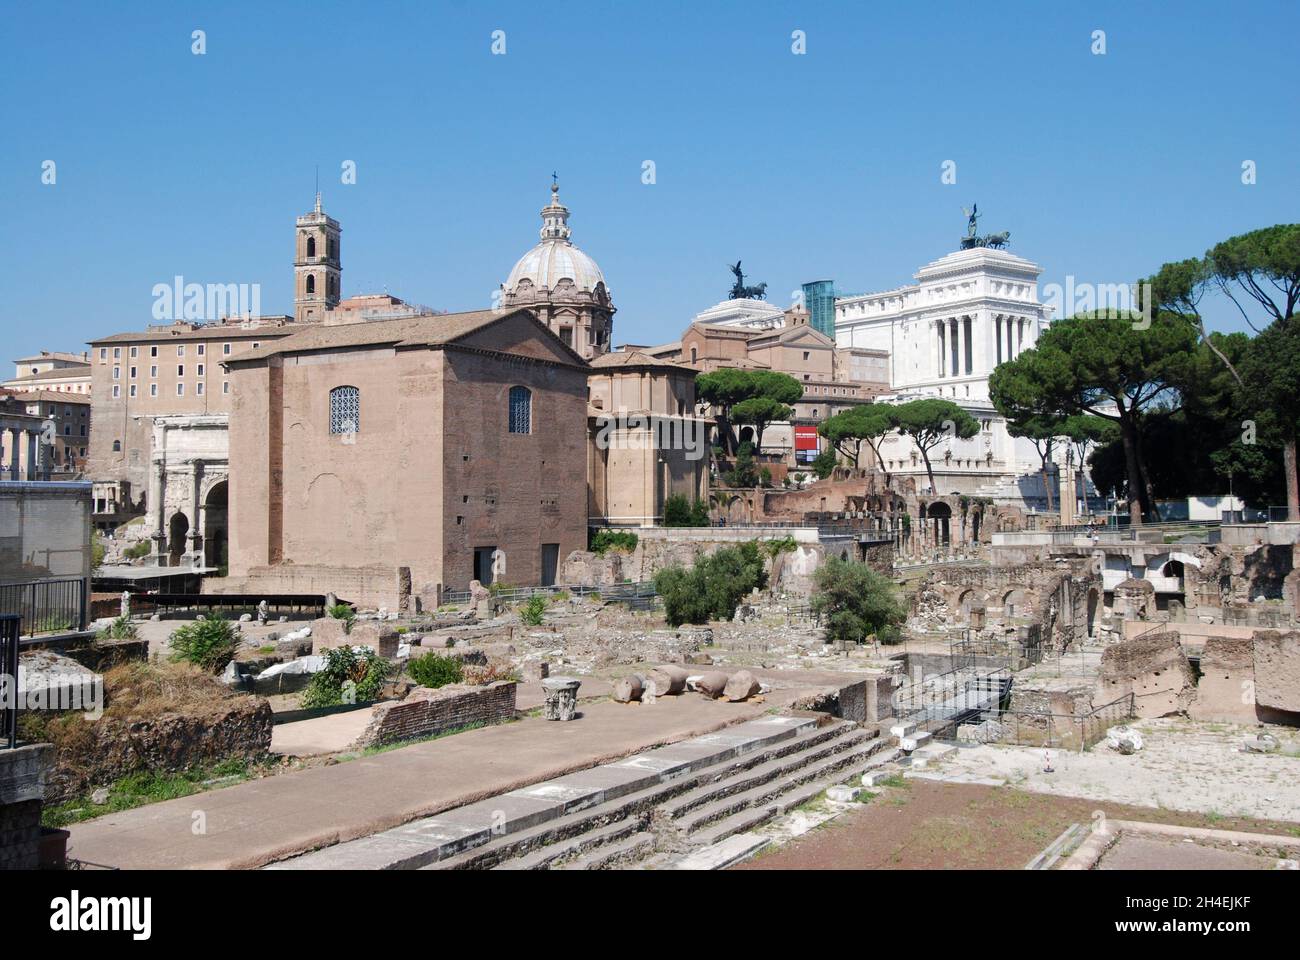 El edificio de Curia del Senado Romano en el foro romanum. Roma, Italia Foto de stock